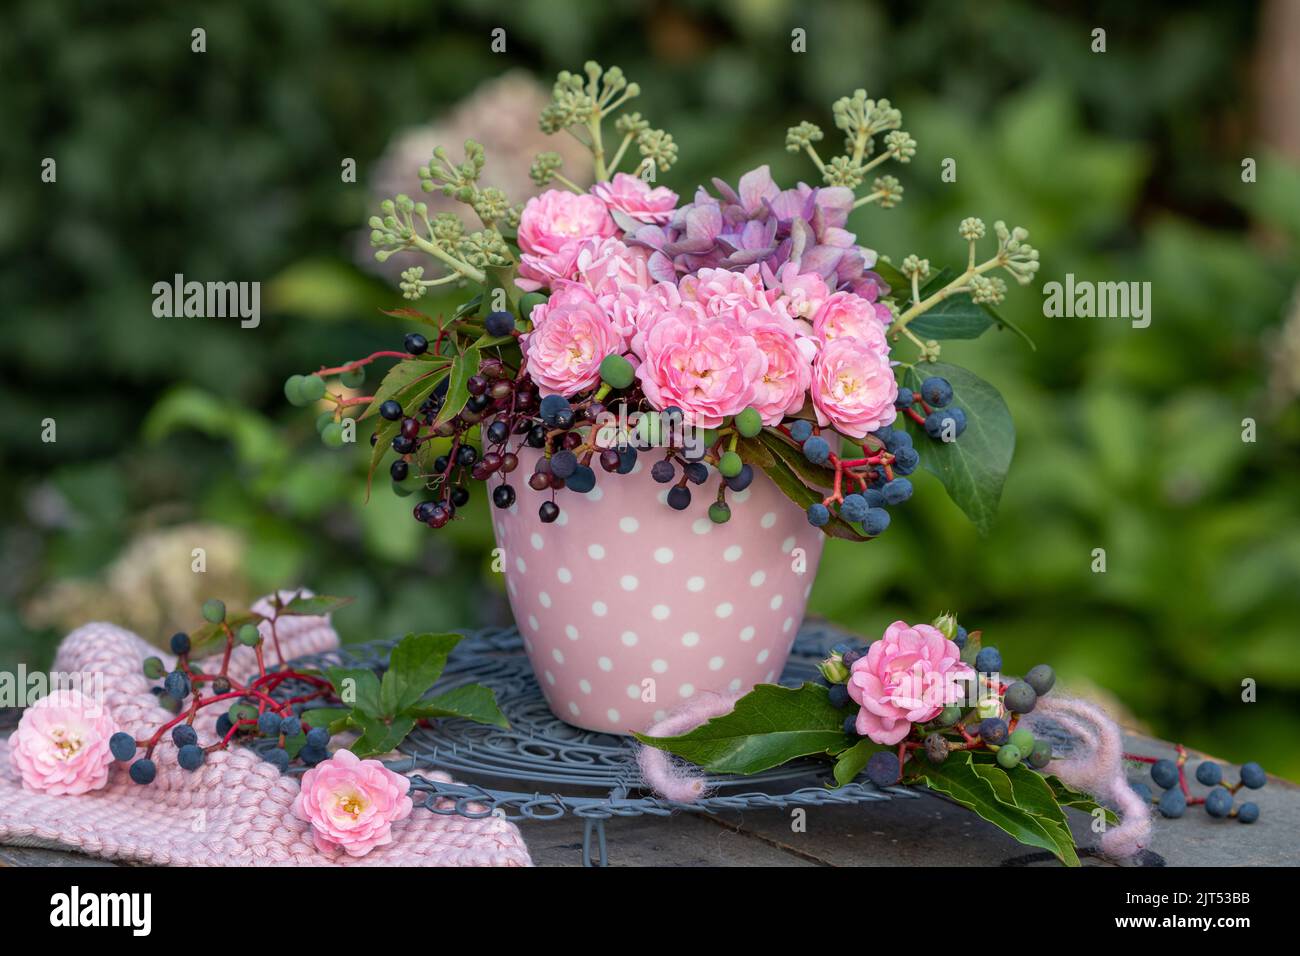 bouquet di rose rosa, fiori di ortensia, bacche di sambuco, bacche di vino selvatico e edera fruttata in tazza Foto Stock